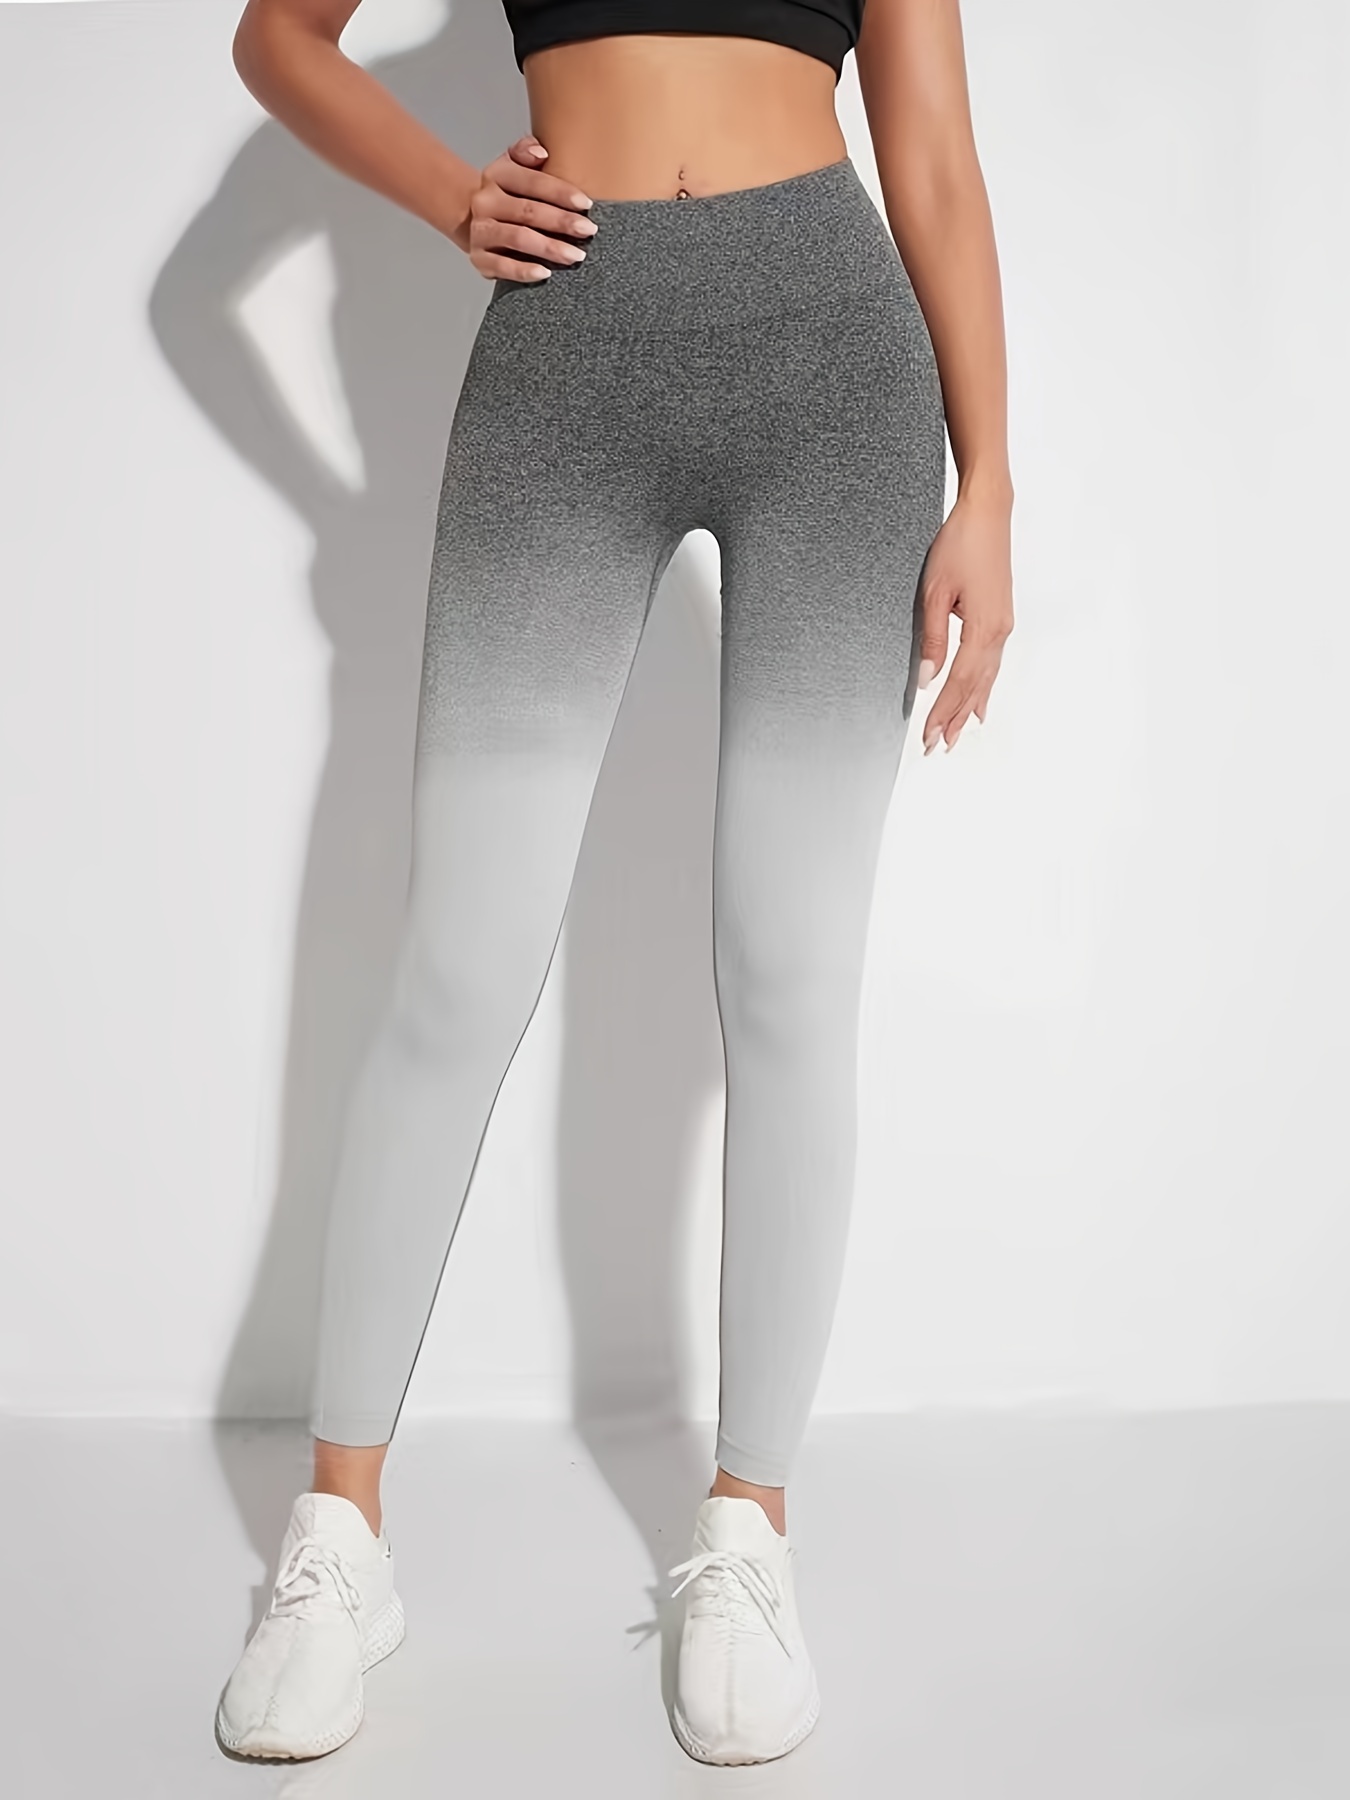 GapFit gfast Leggings Women's Yoga Pants Activewear Workout Cotton Gray  Ombré S